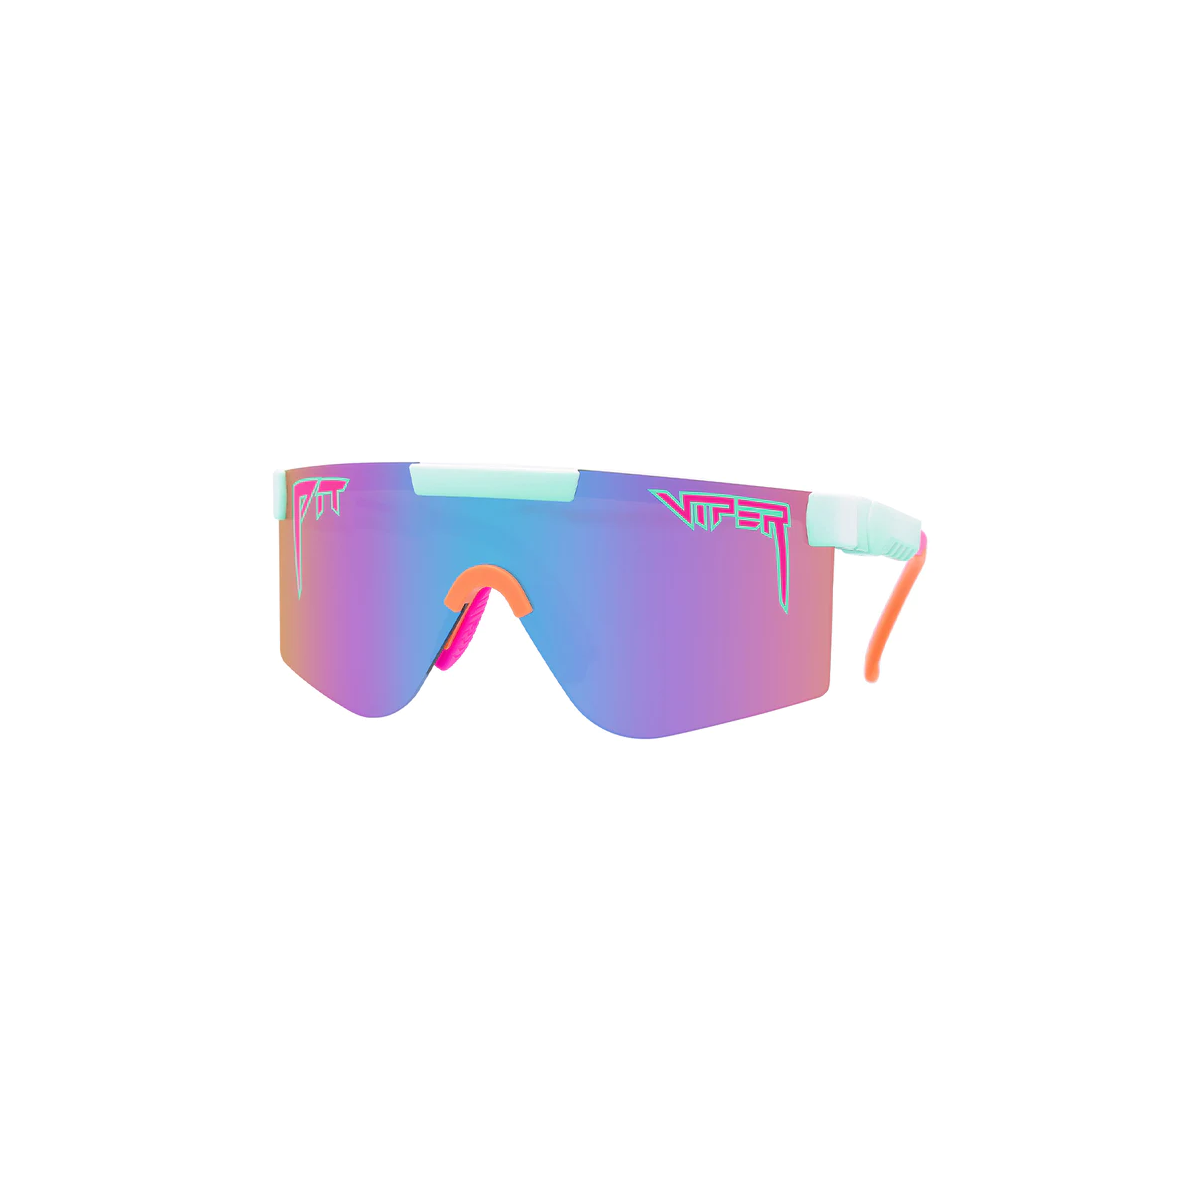 Gafas de sol Pit Viper The 2000s - The Bonaire Breeze con lente Polarizada azul y lila